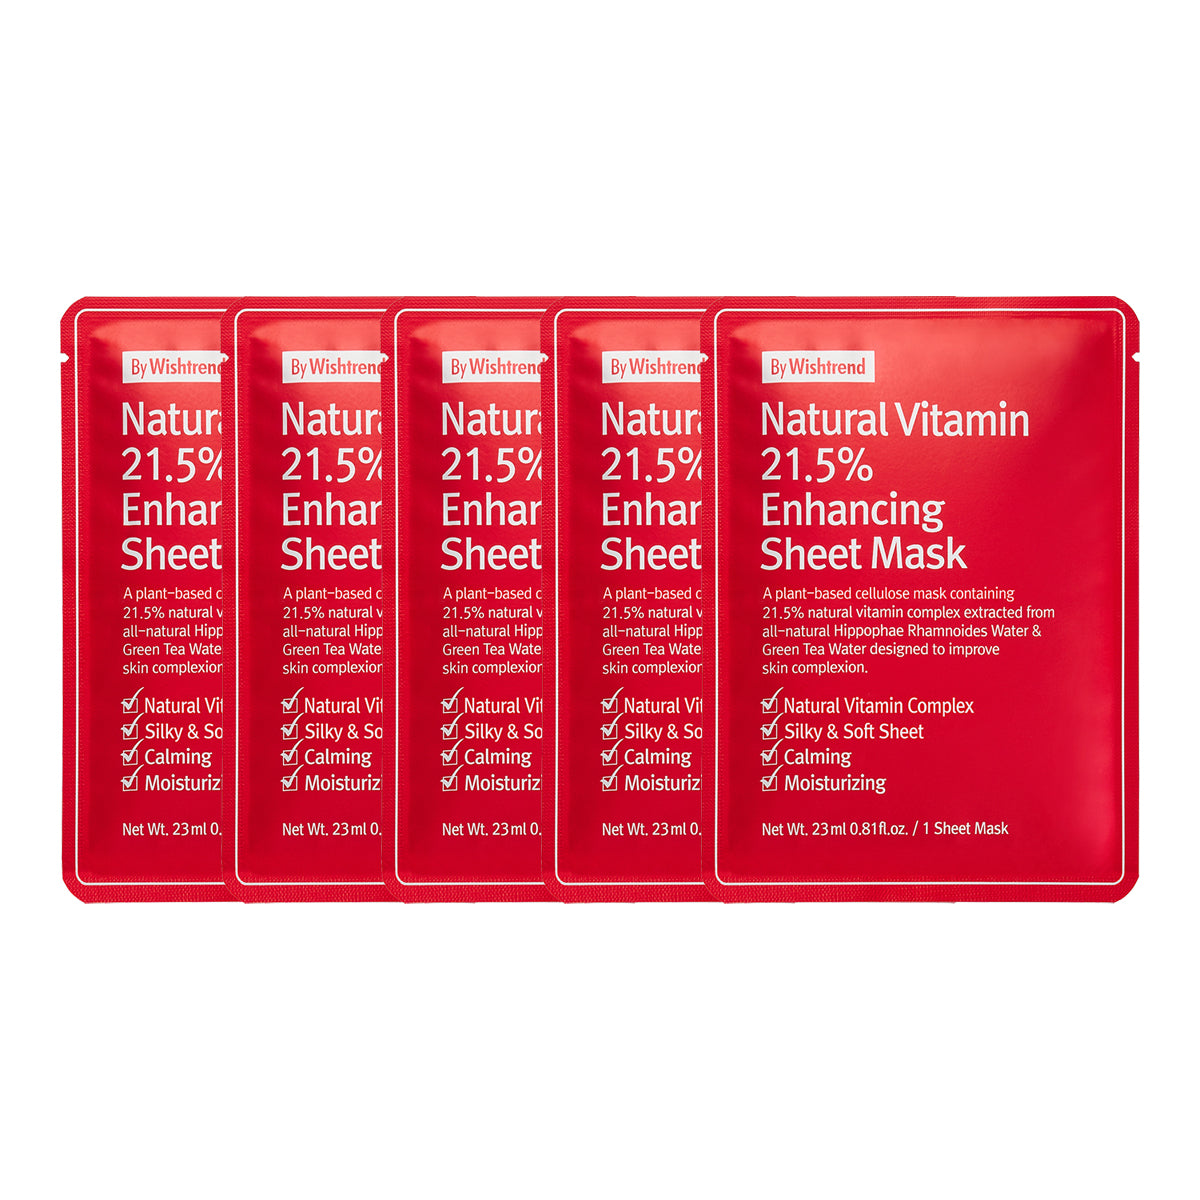 Natural Vitamin 21.5% Enhancing Sheet Mask Set [5 Masks]